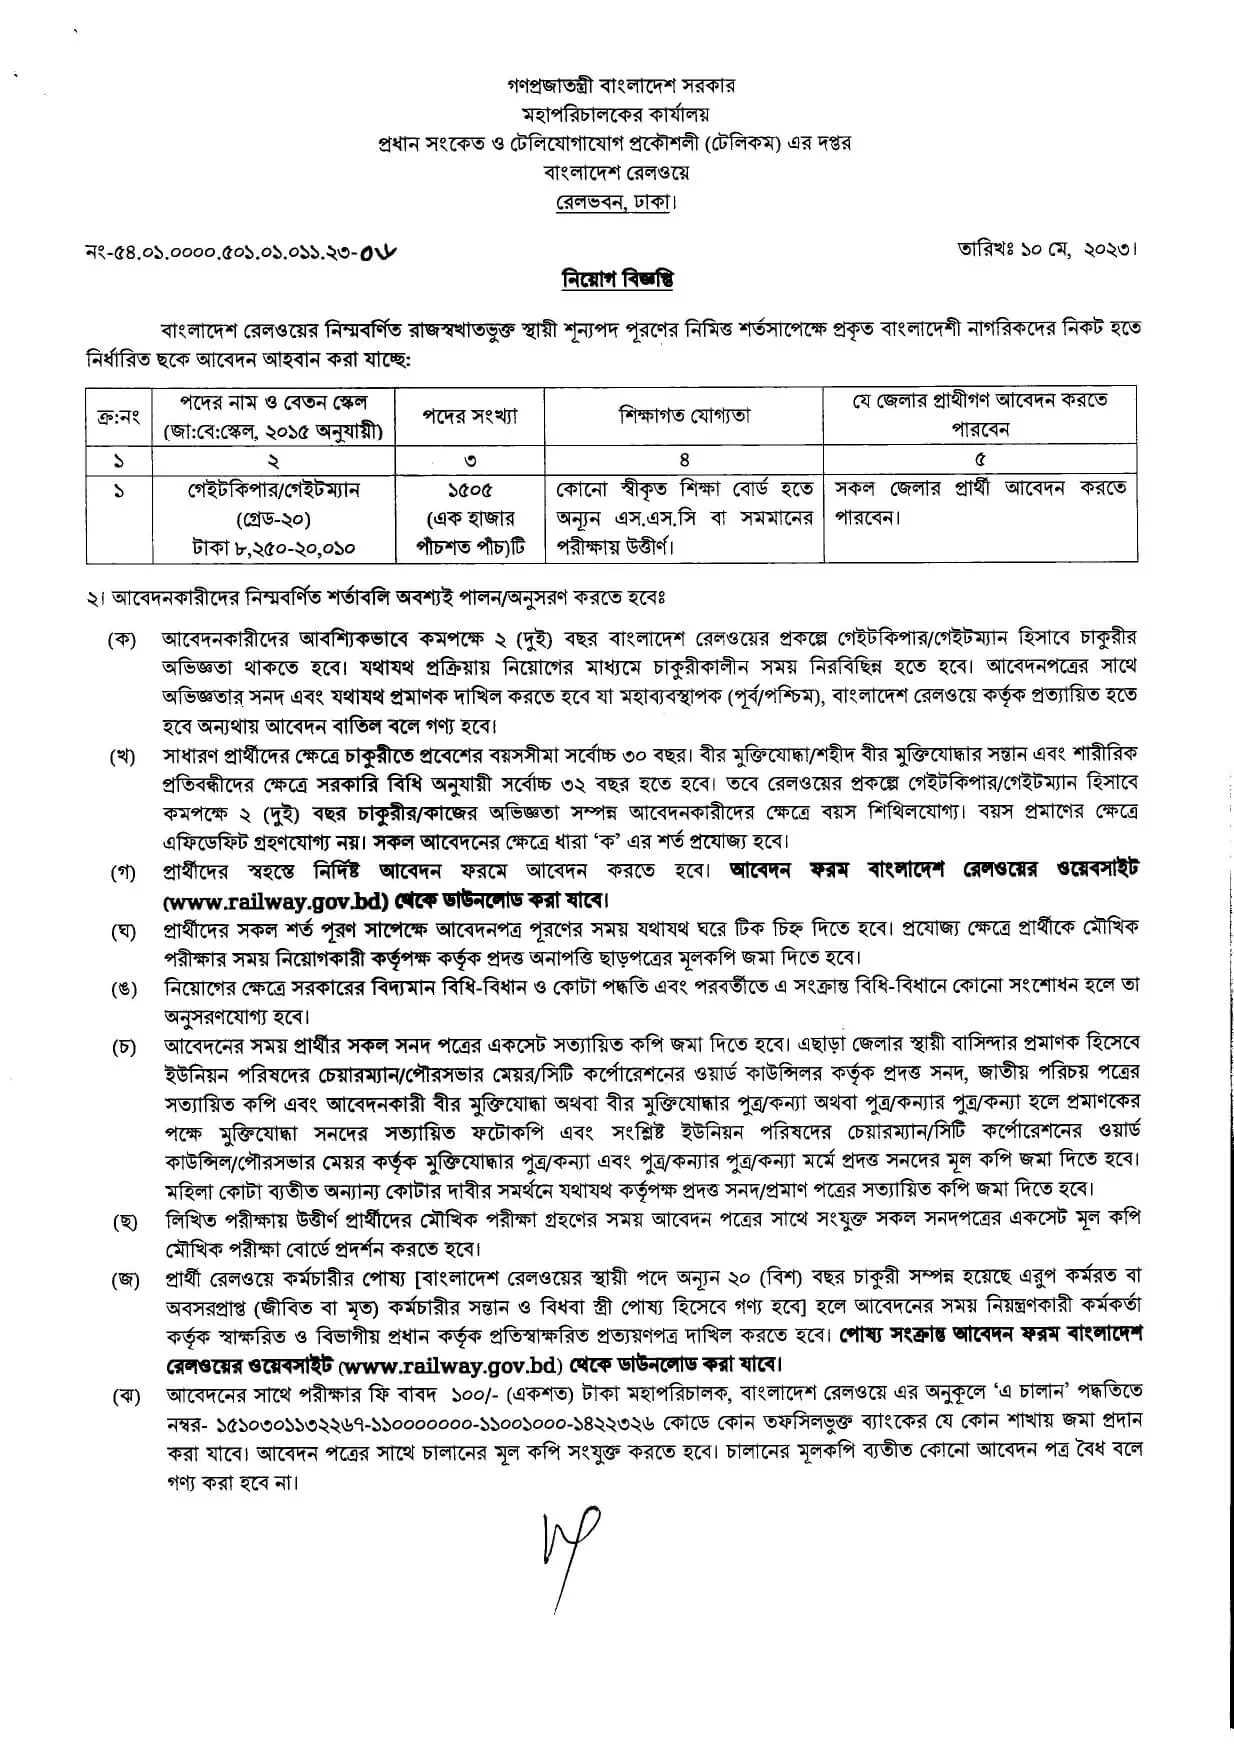 Gatekeeper Bangladesh Railway Job Circular